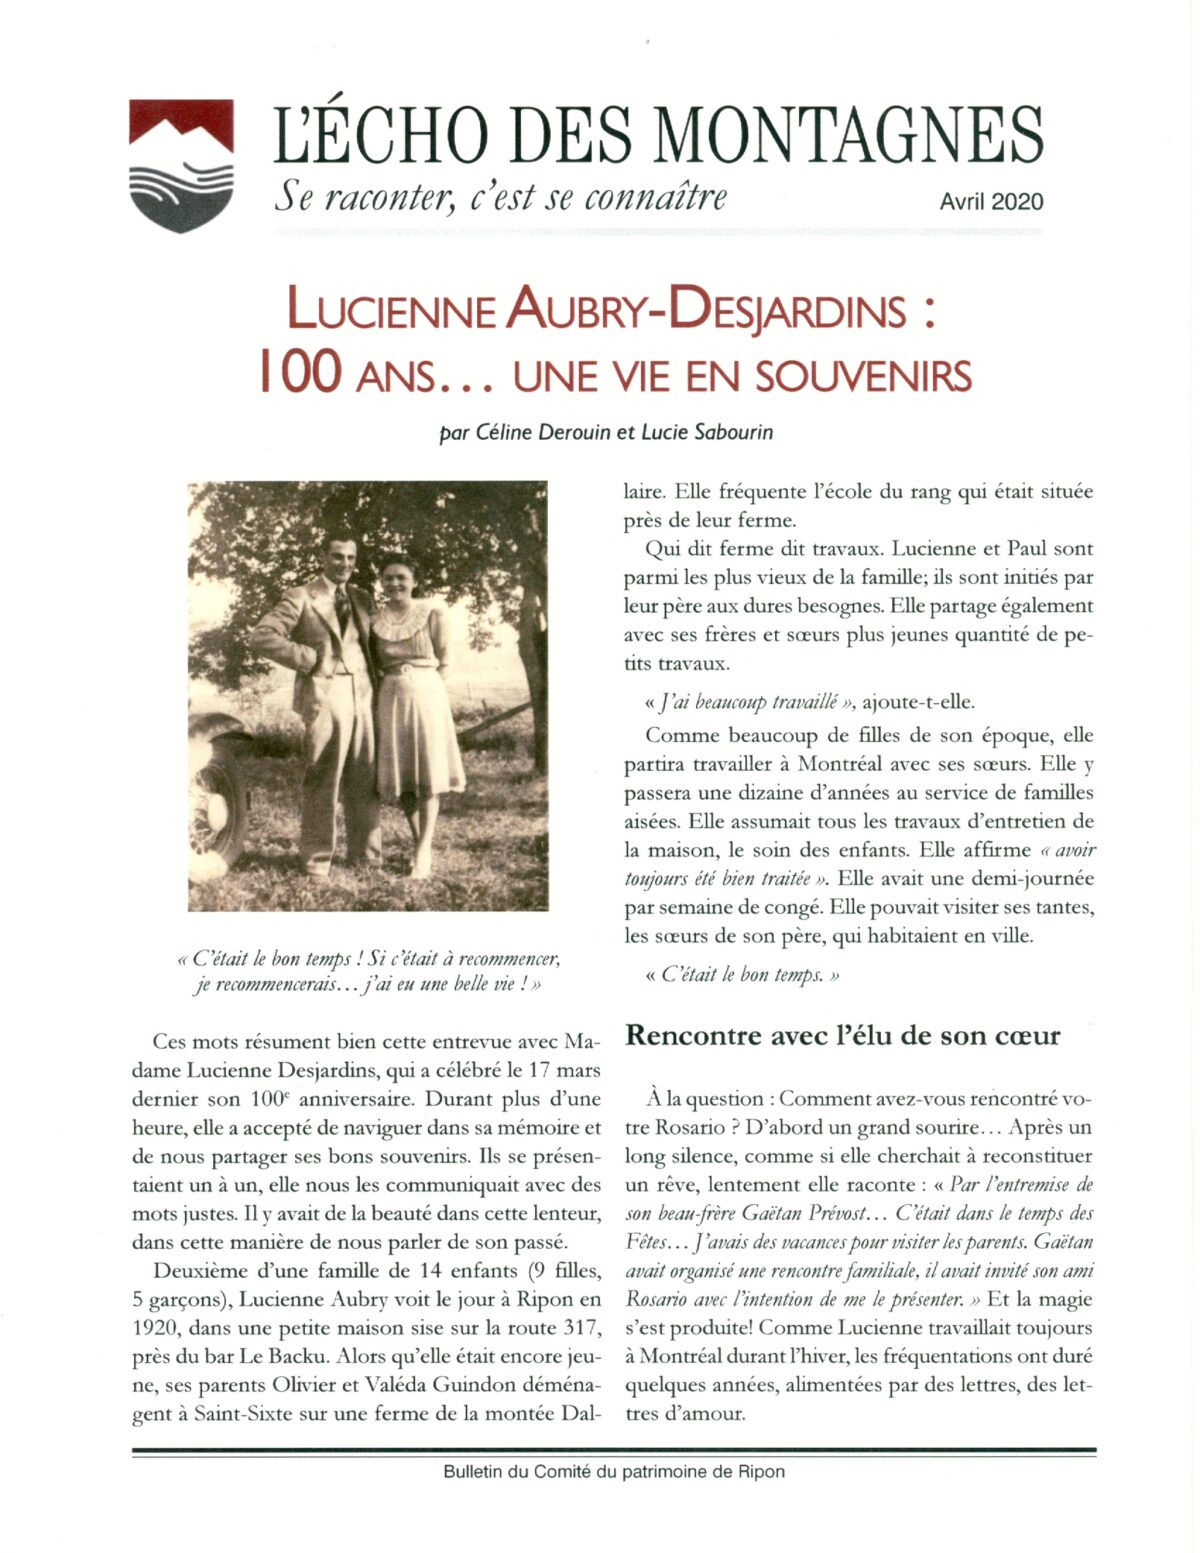 Licienne Aubry-Desjardins, 100 ans de souvenirs.